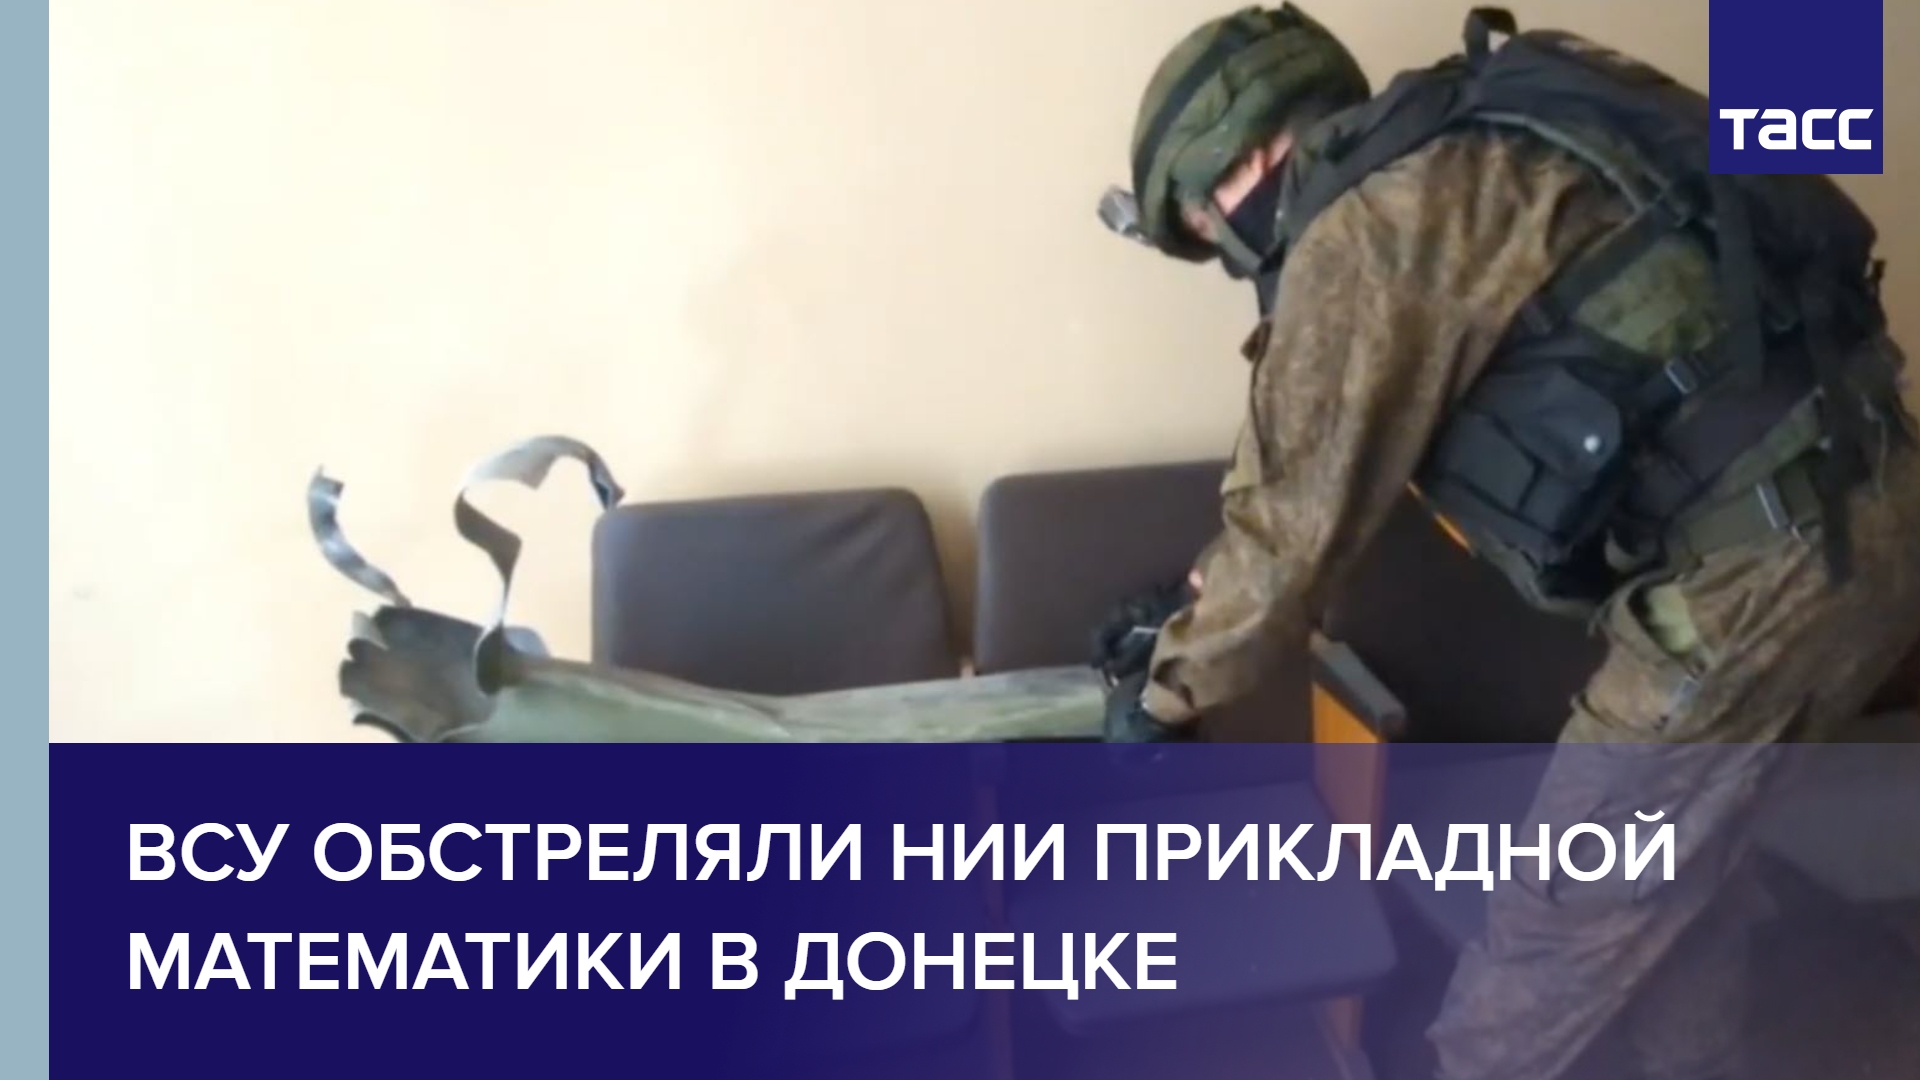 ВСУ обстреляли НИИ прикладной математики в Донецке #shorts